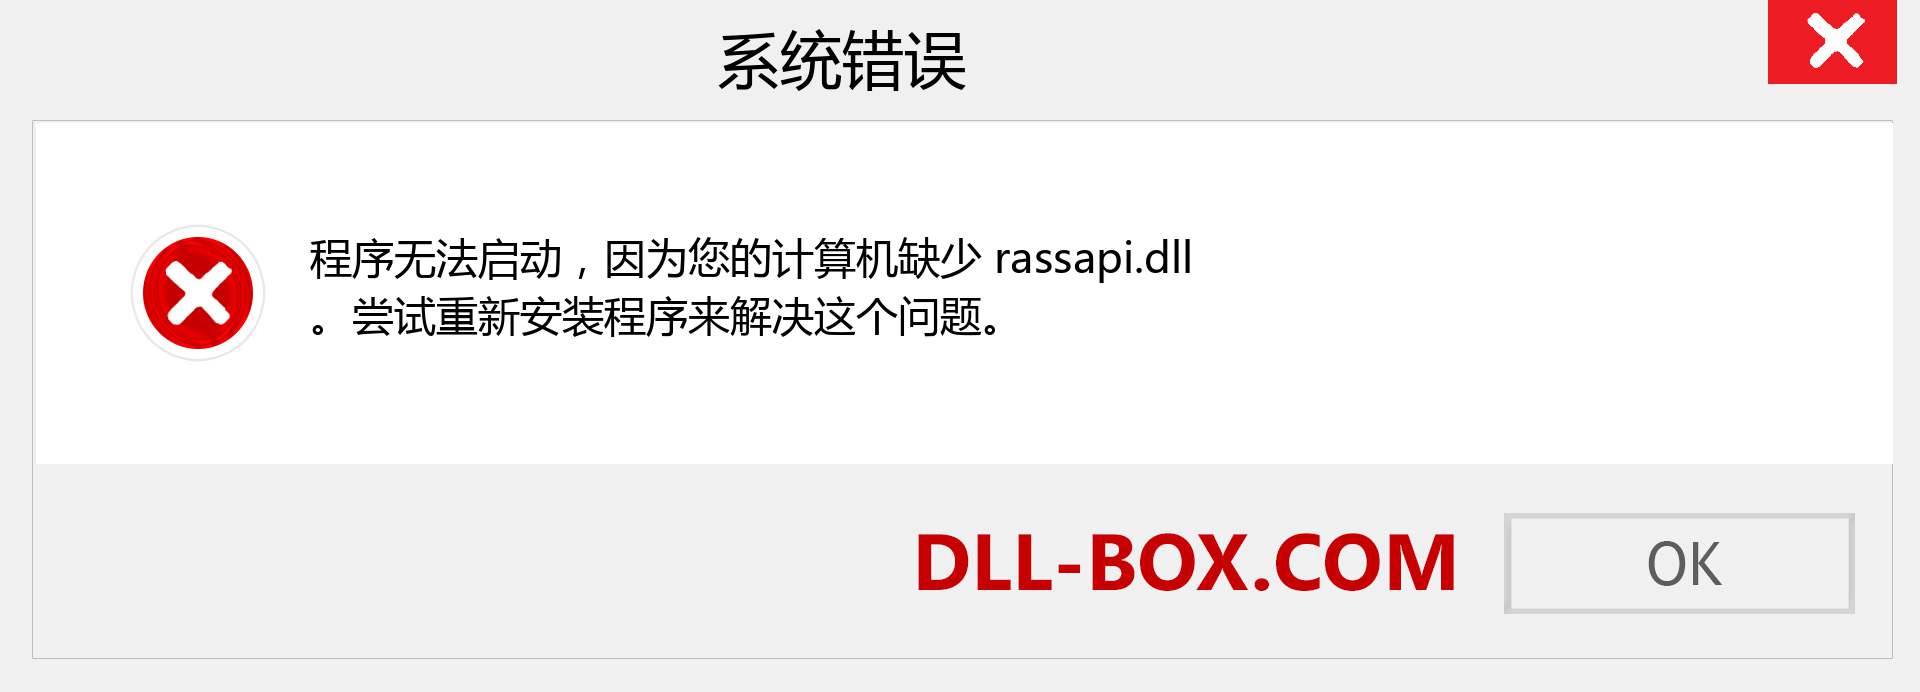 rassapi.dll 文件丢失？。 适用于 Windows 7、8、10 的下载 - 修复 Windows、照片、图像上的 rassapi dll 丢失错误